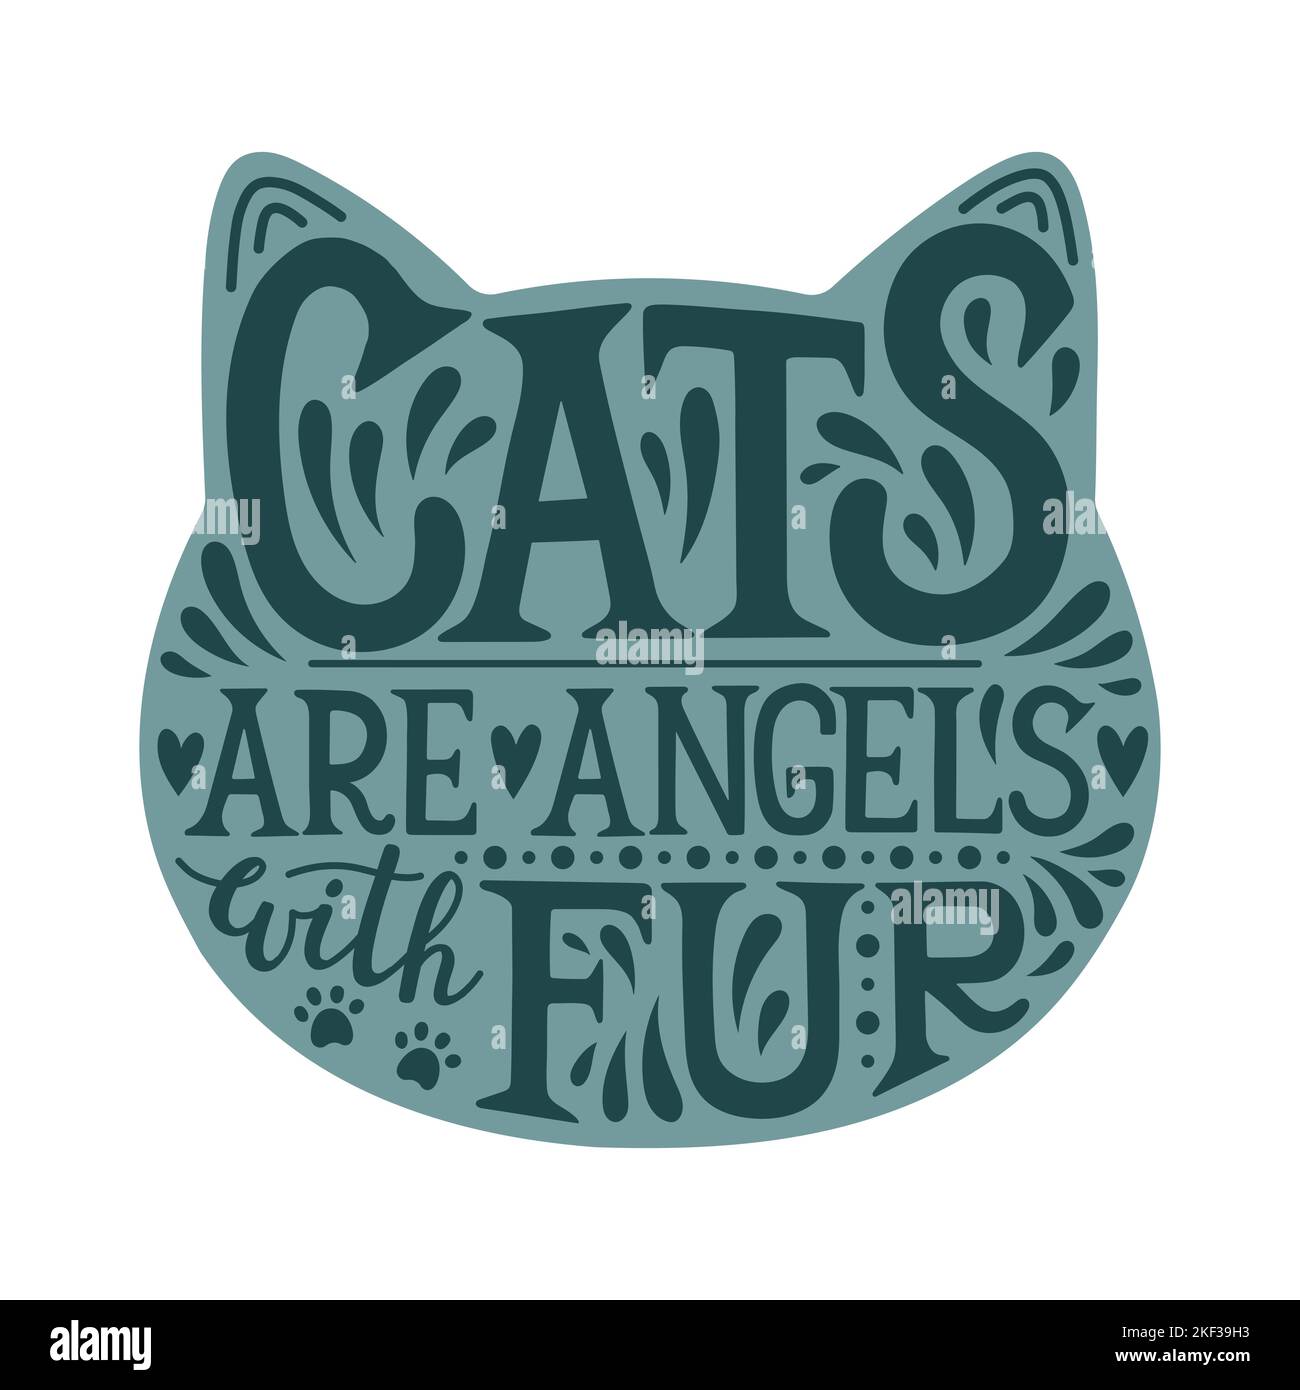 Les chats sont des anges avec le lettrage de silhouette de fourrure, joli lettrage illustration dans la silhouette de chat, vecteur isolé Illustration de Vecteur